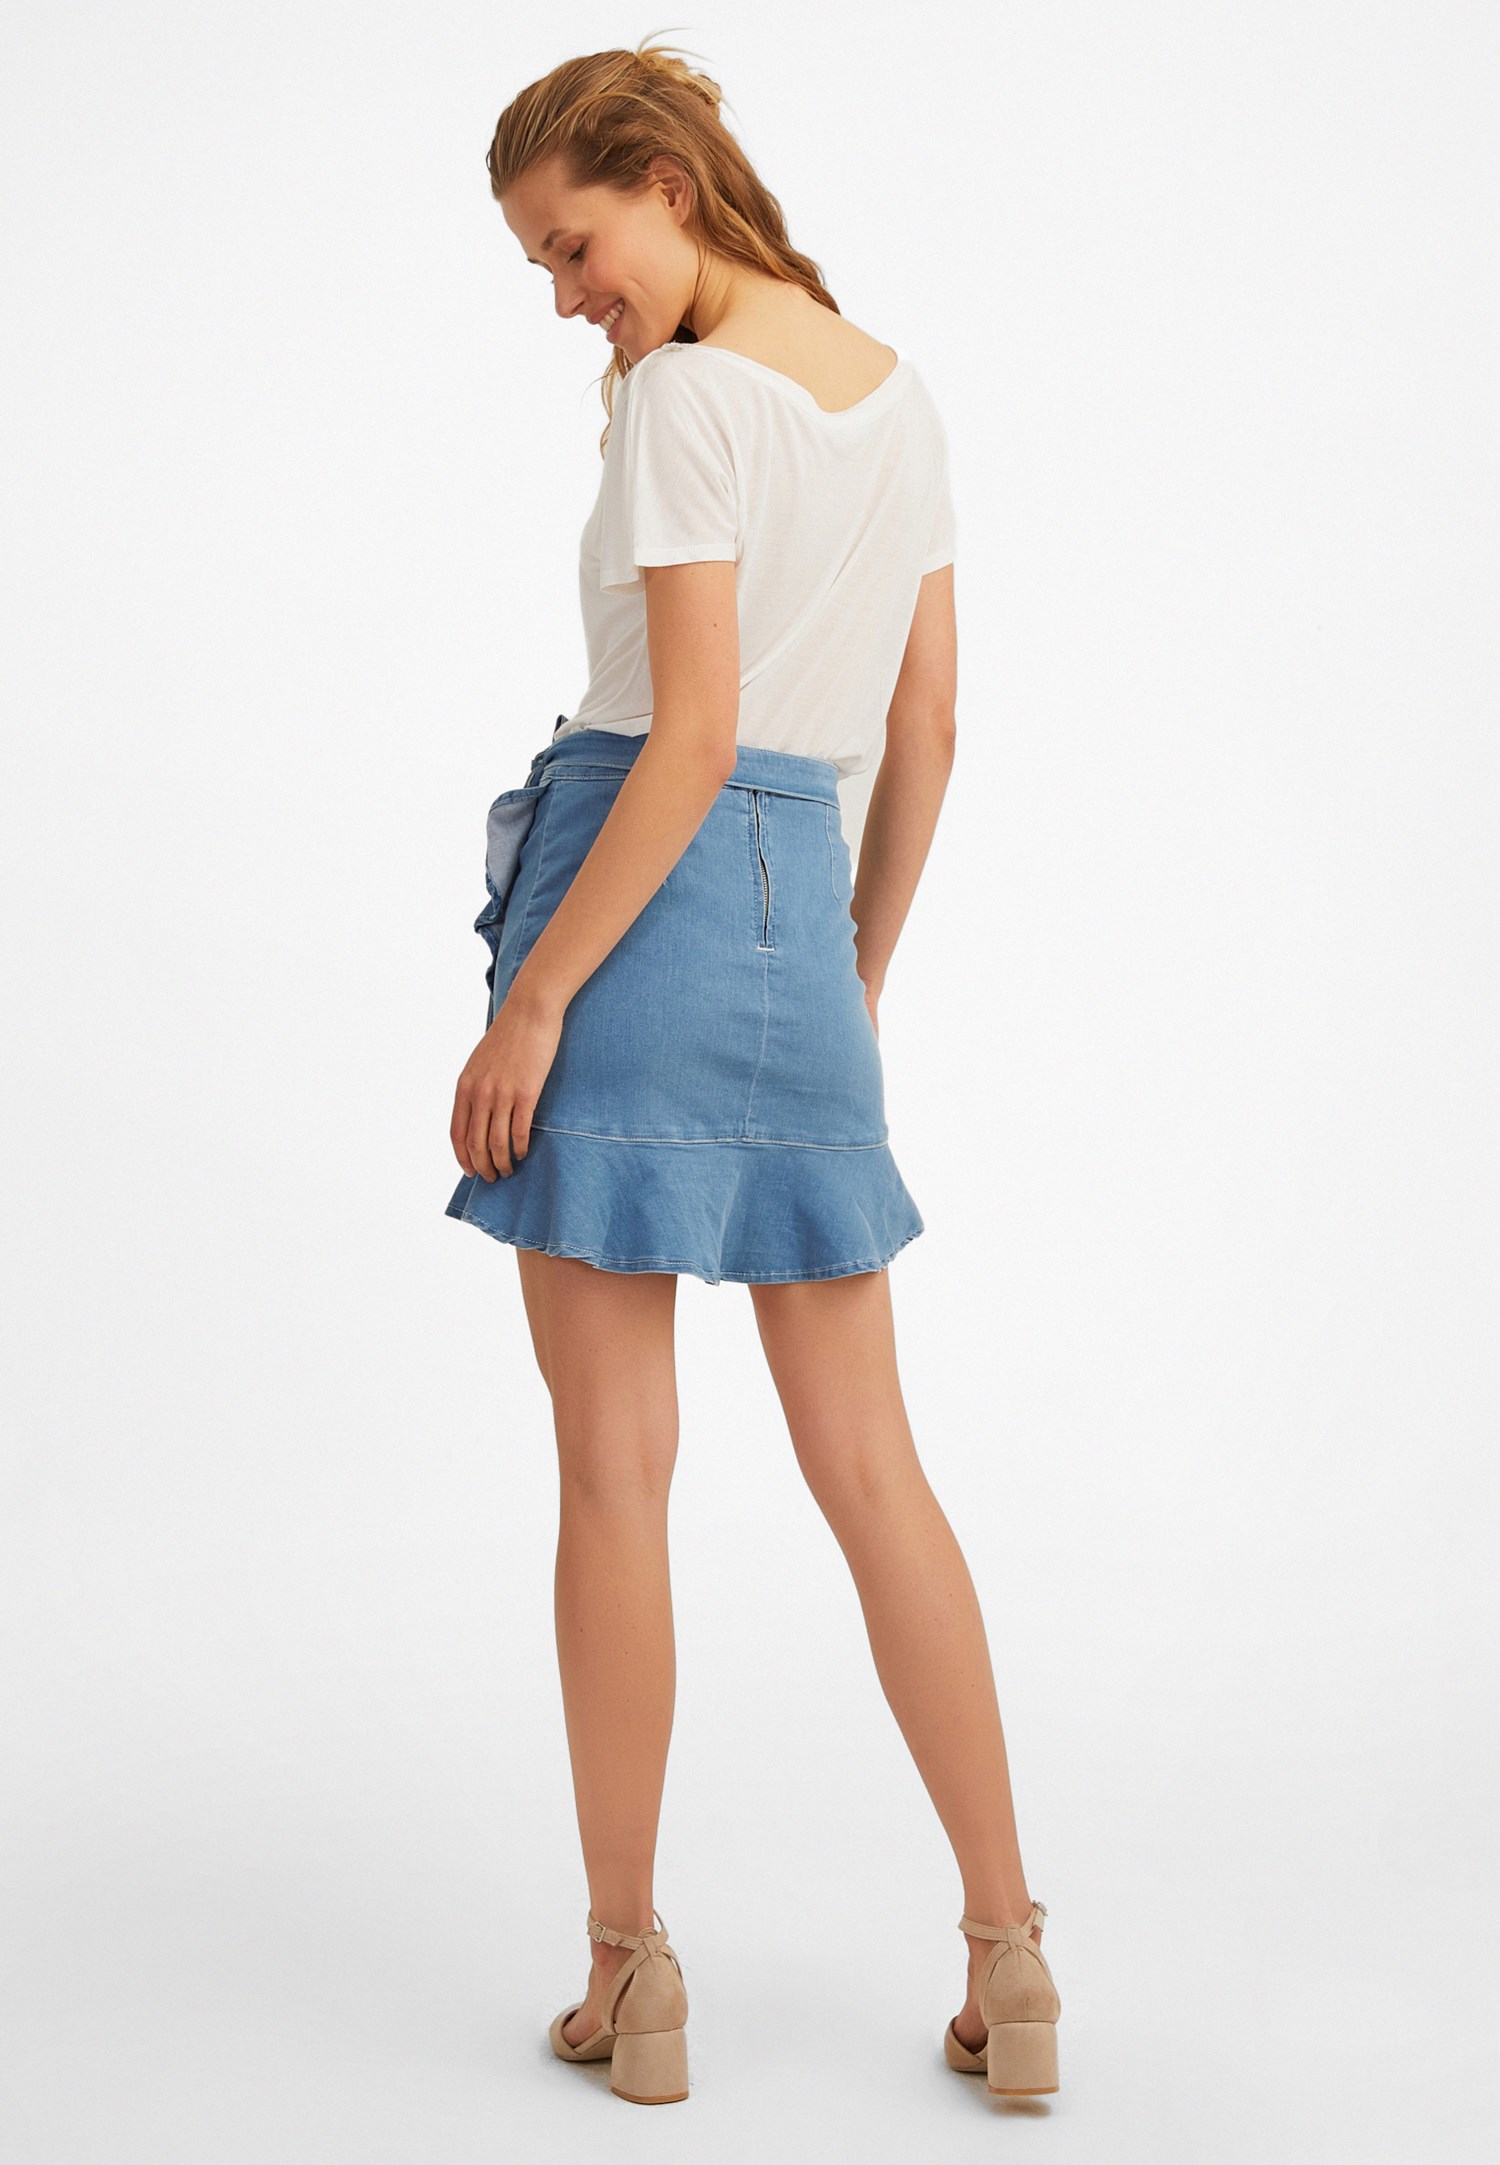 Women Blue Denim Skirt with Ruffle Details